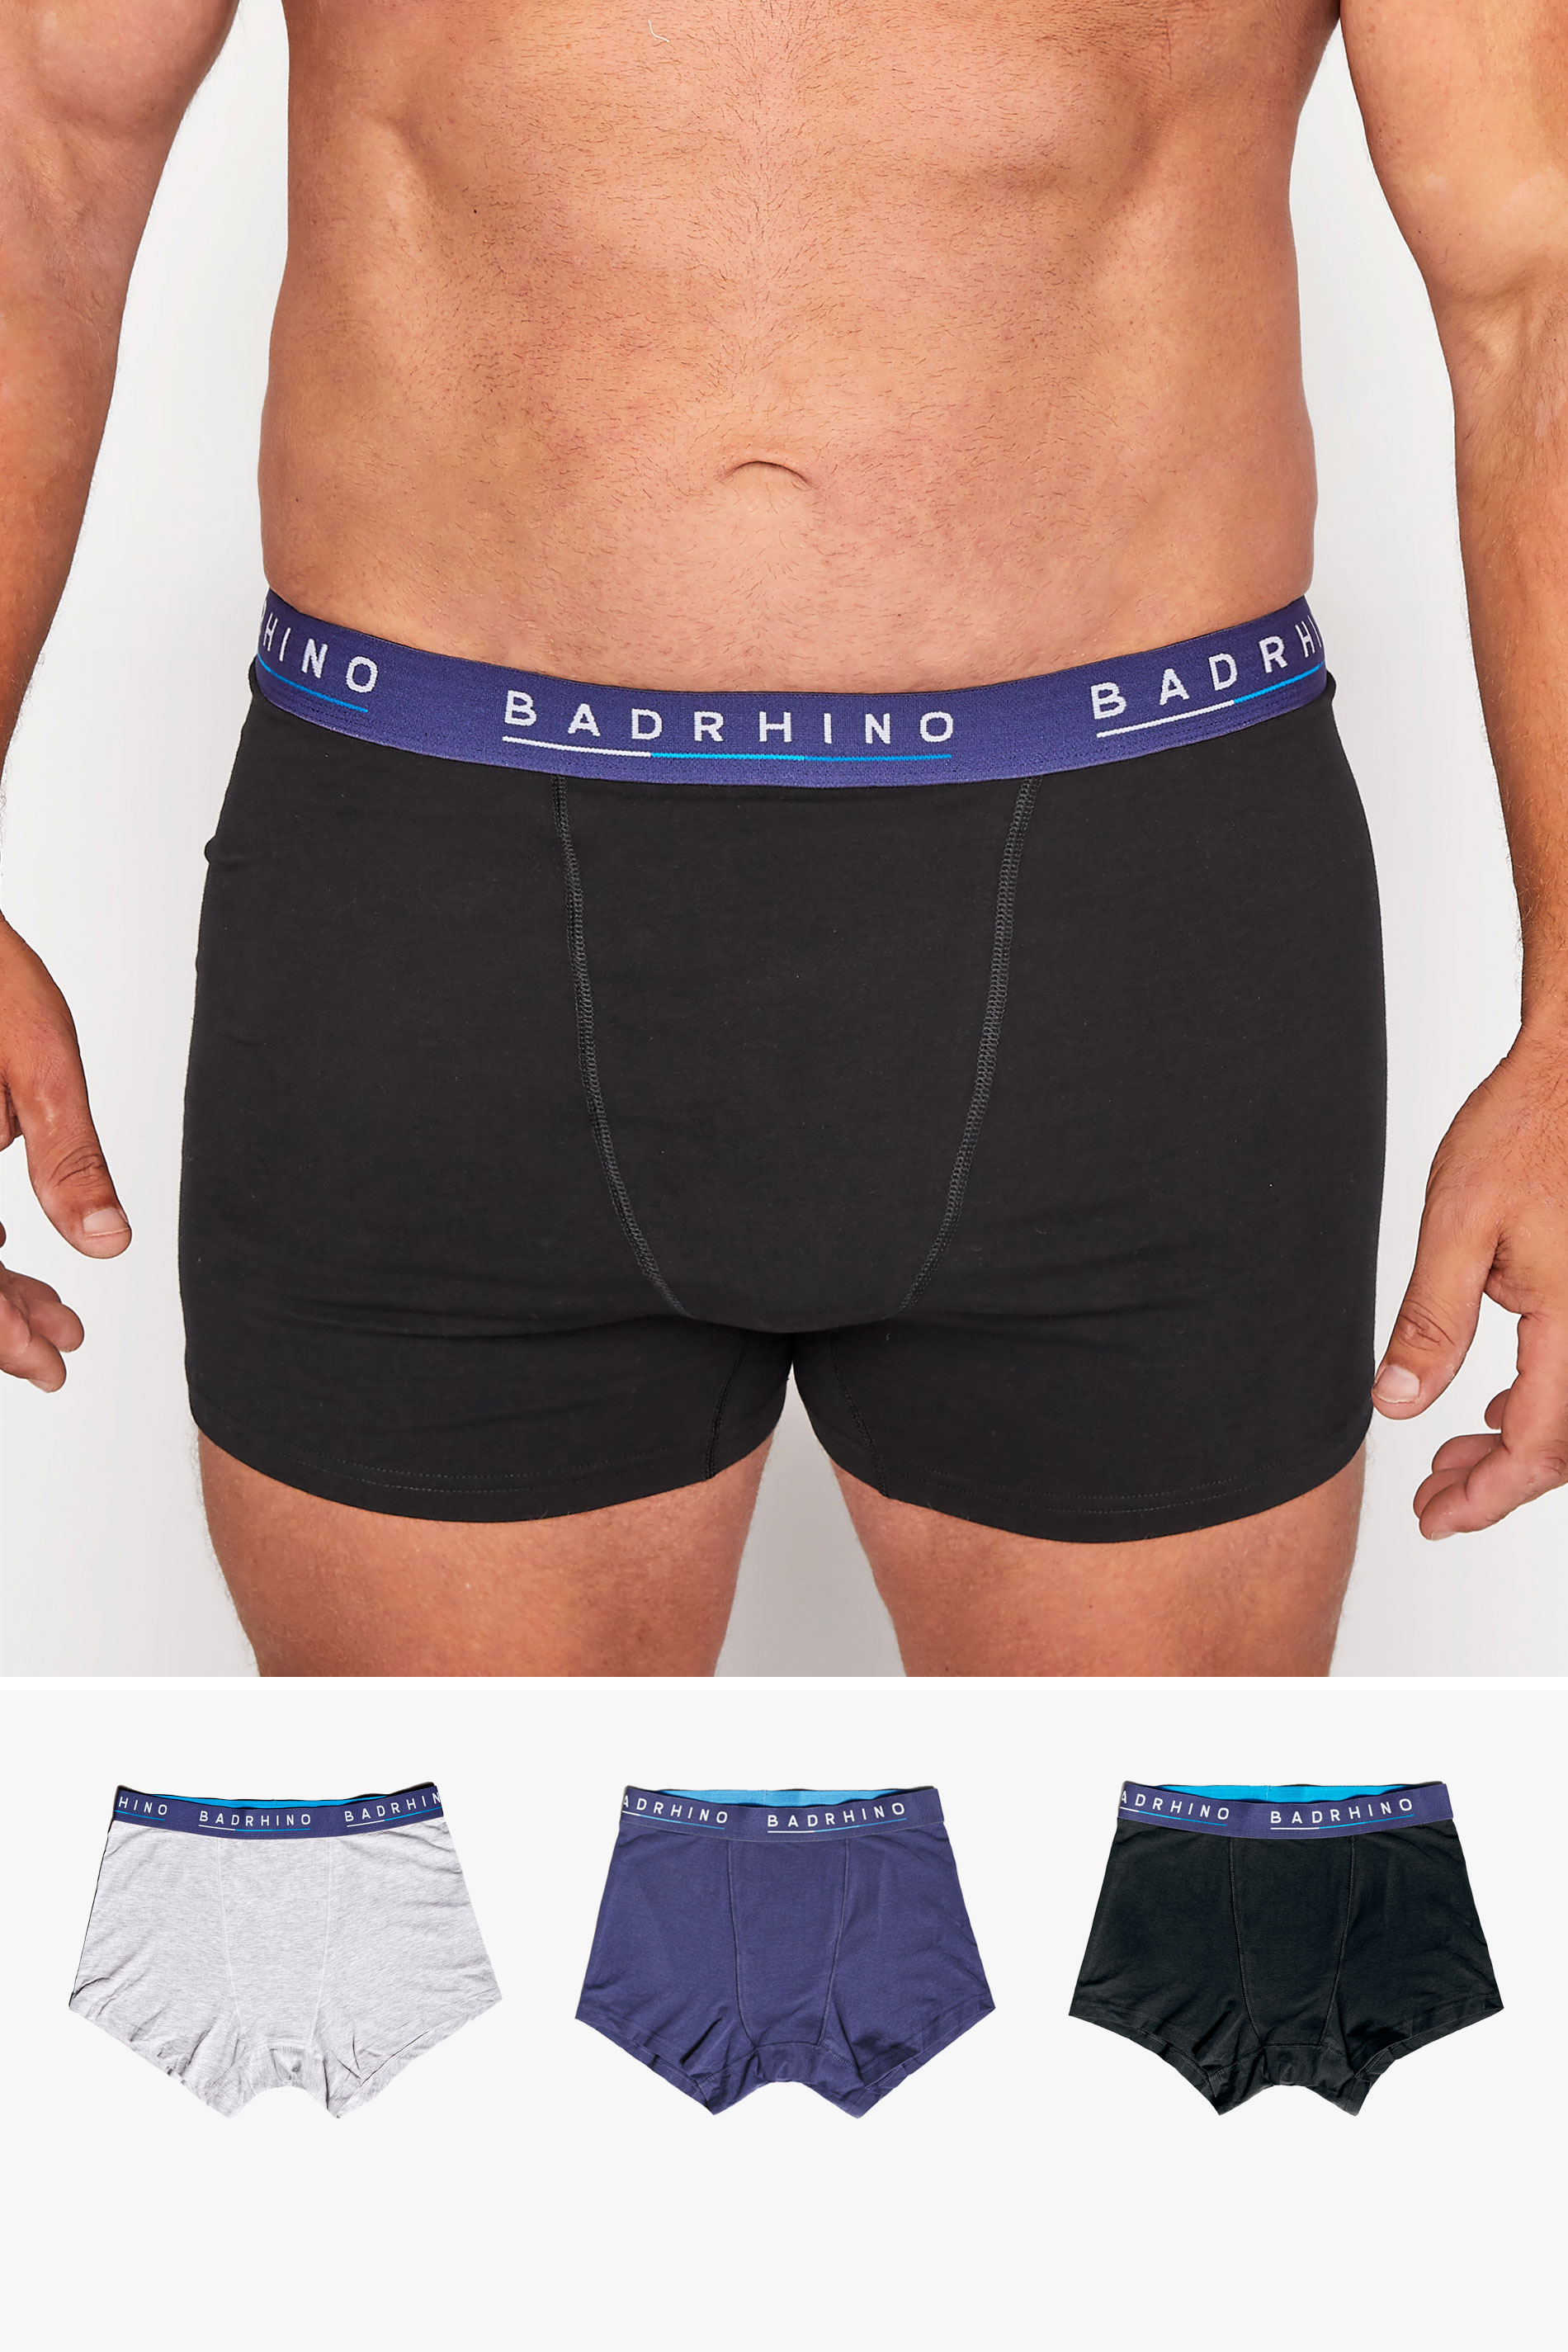 BadRhino Essential 3 Pack Boxers | BadRhino 1